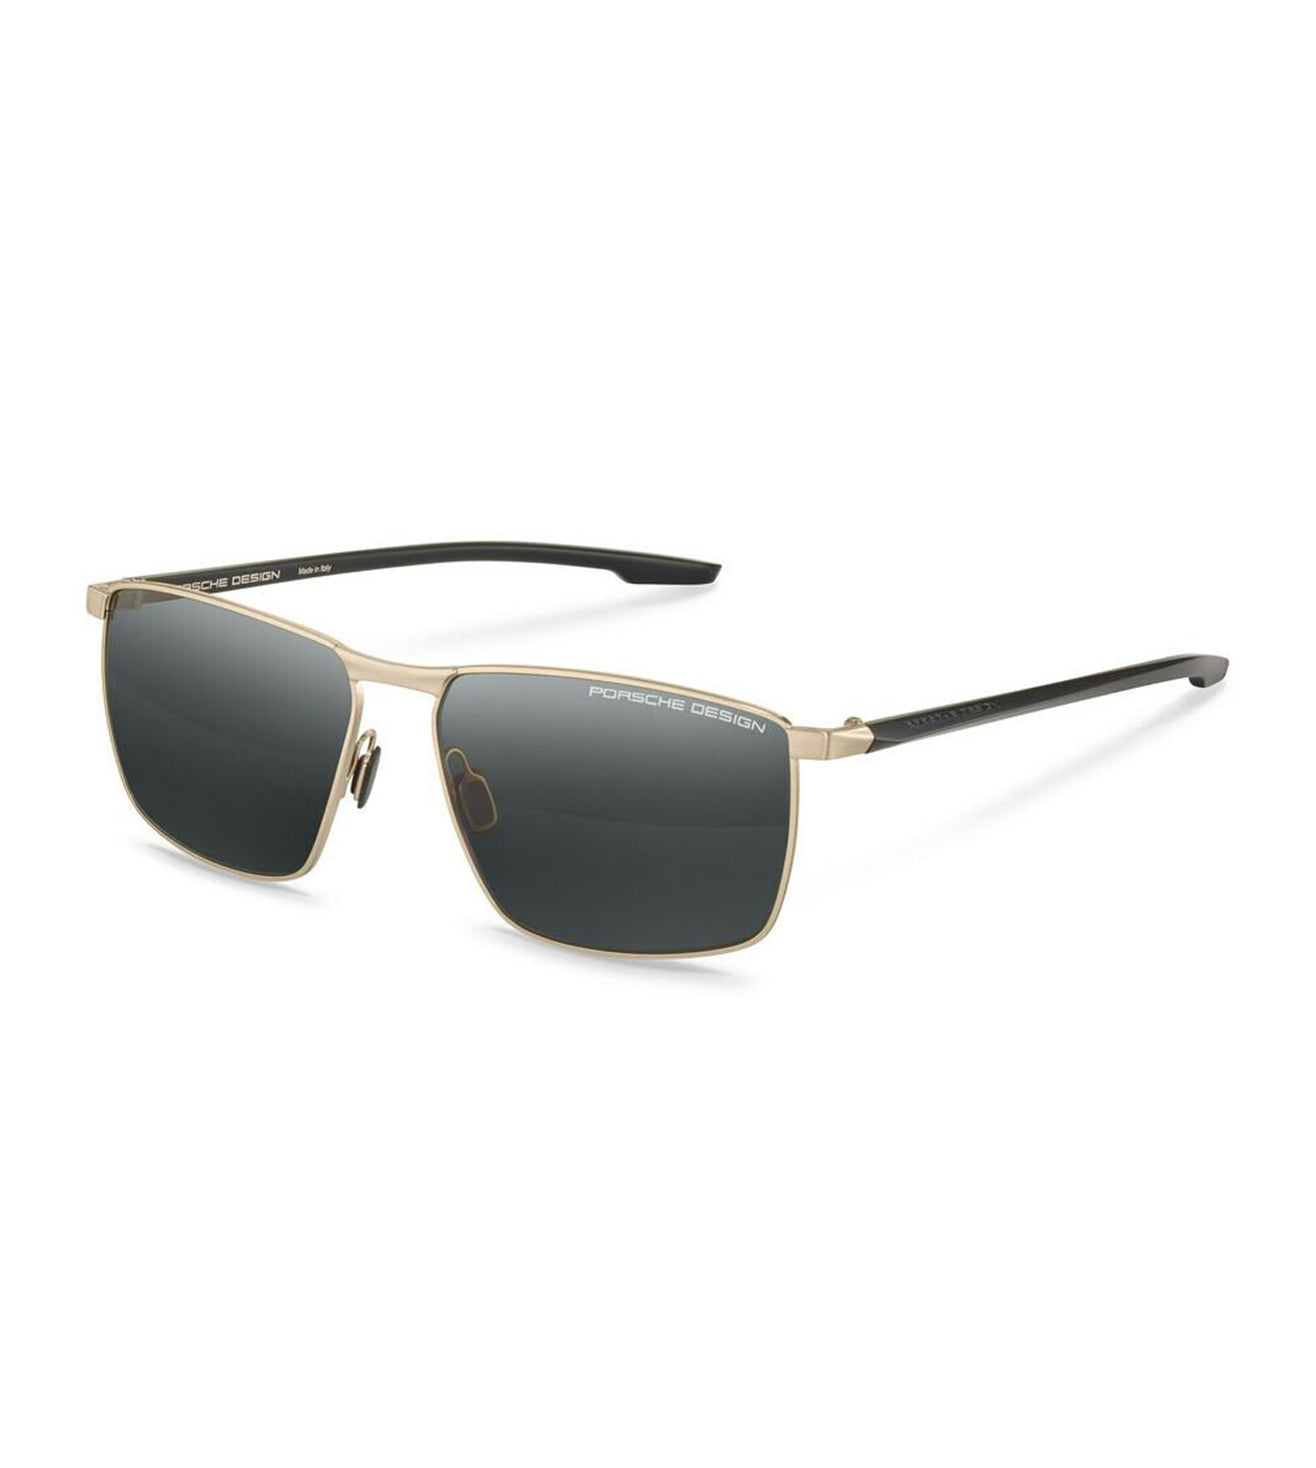 Porsche Design Men's Grey Polarized Square Sunglasses